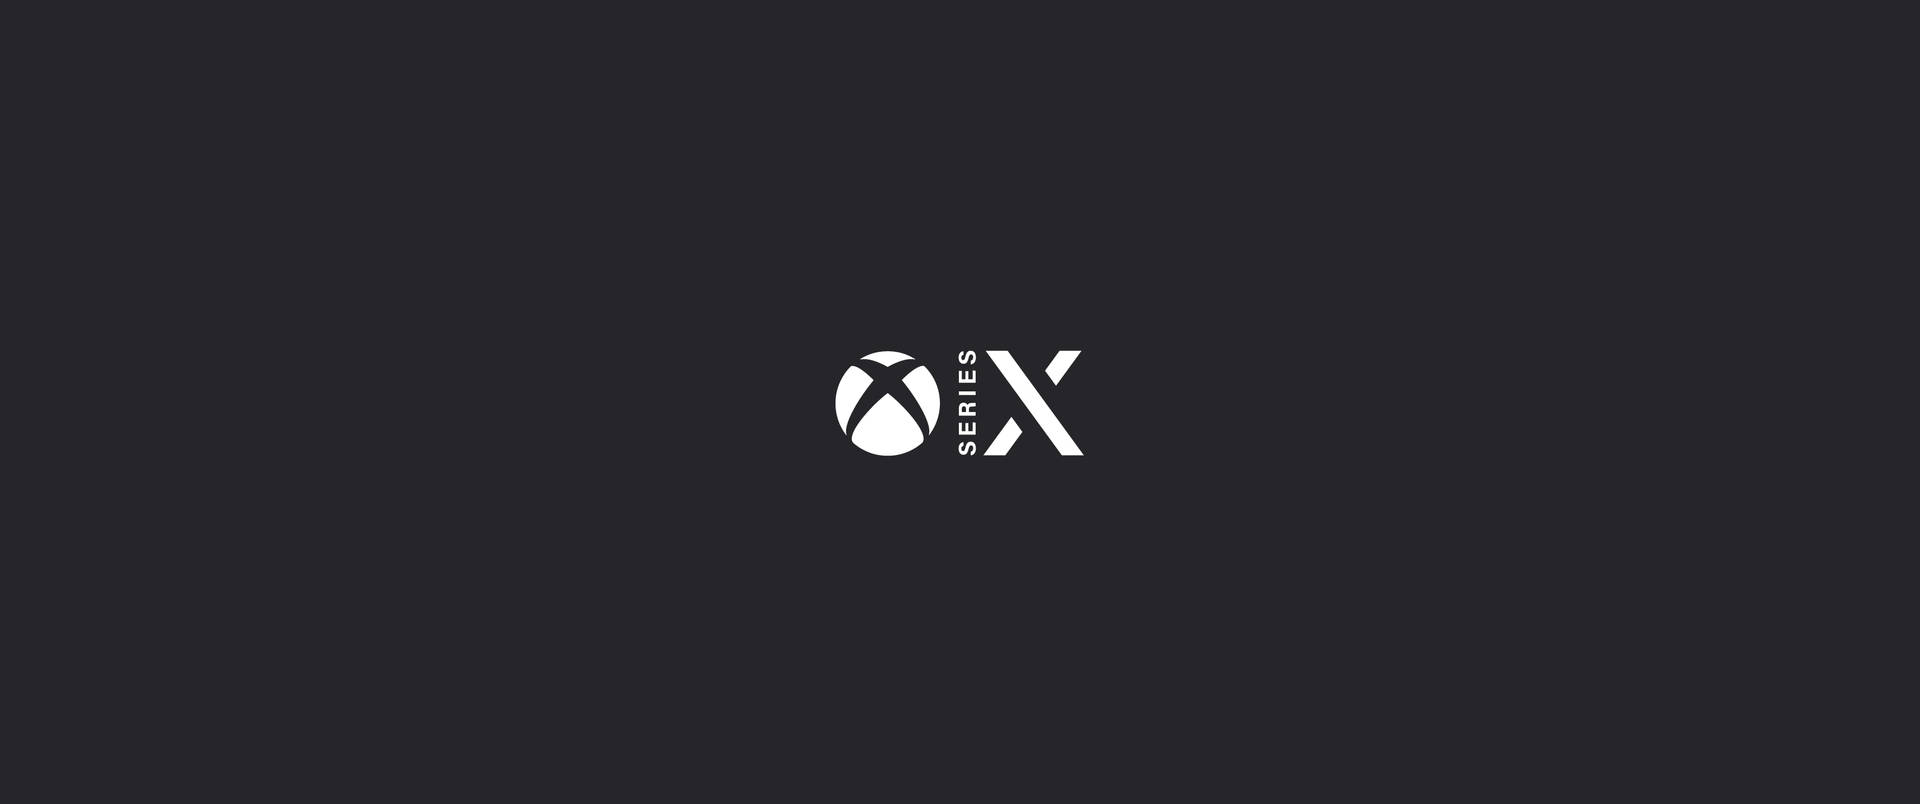 Xbox Series X Minimalista Grigio Scuro Sfondo